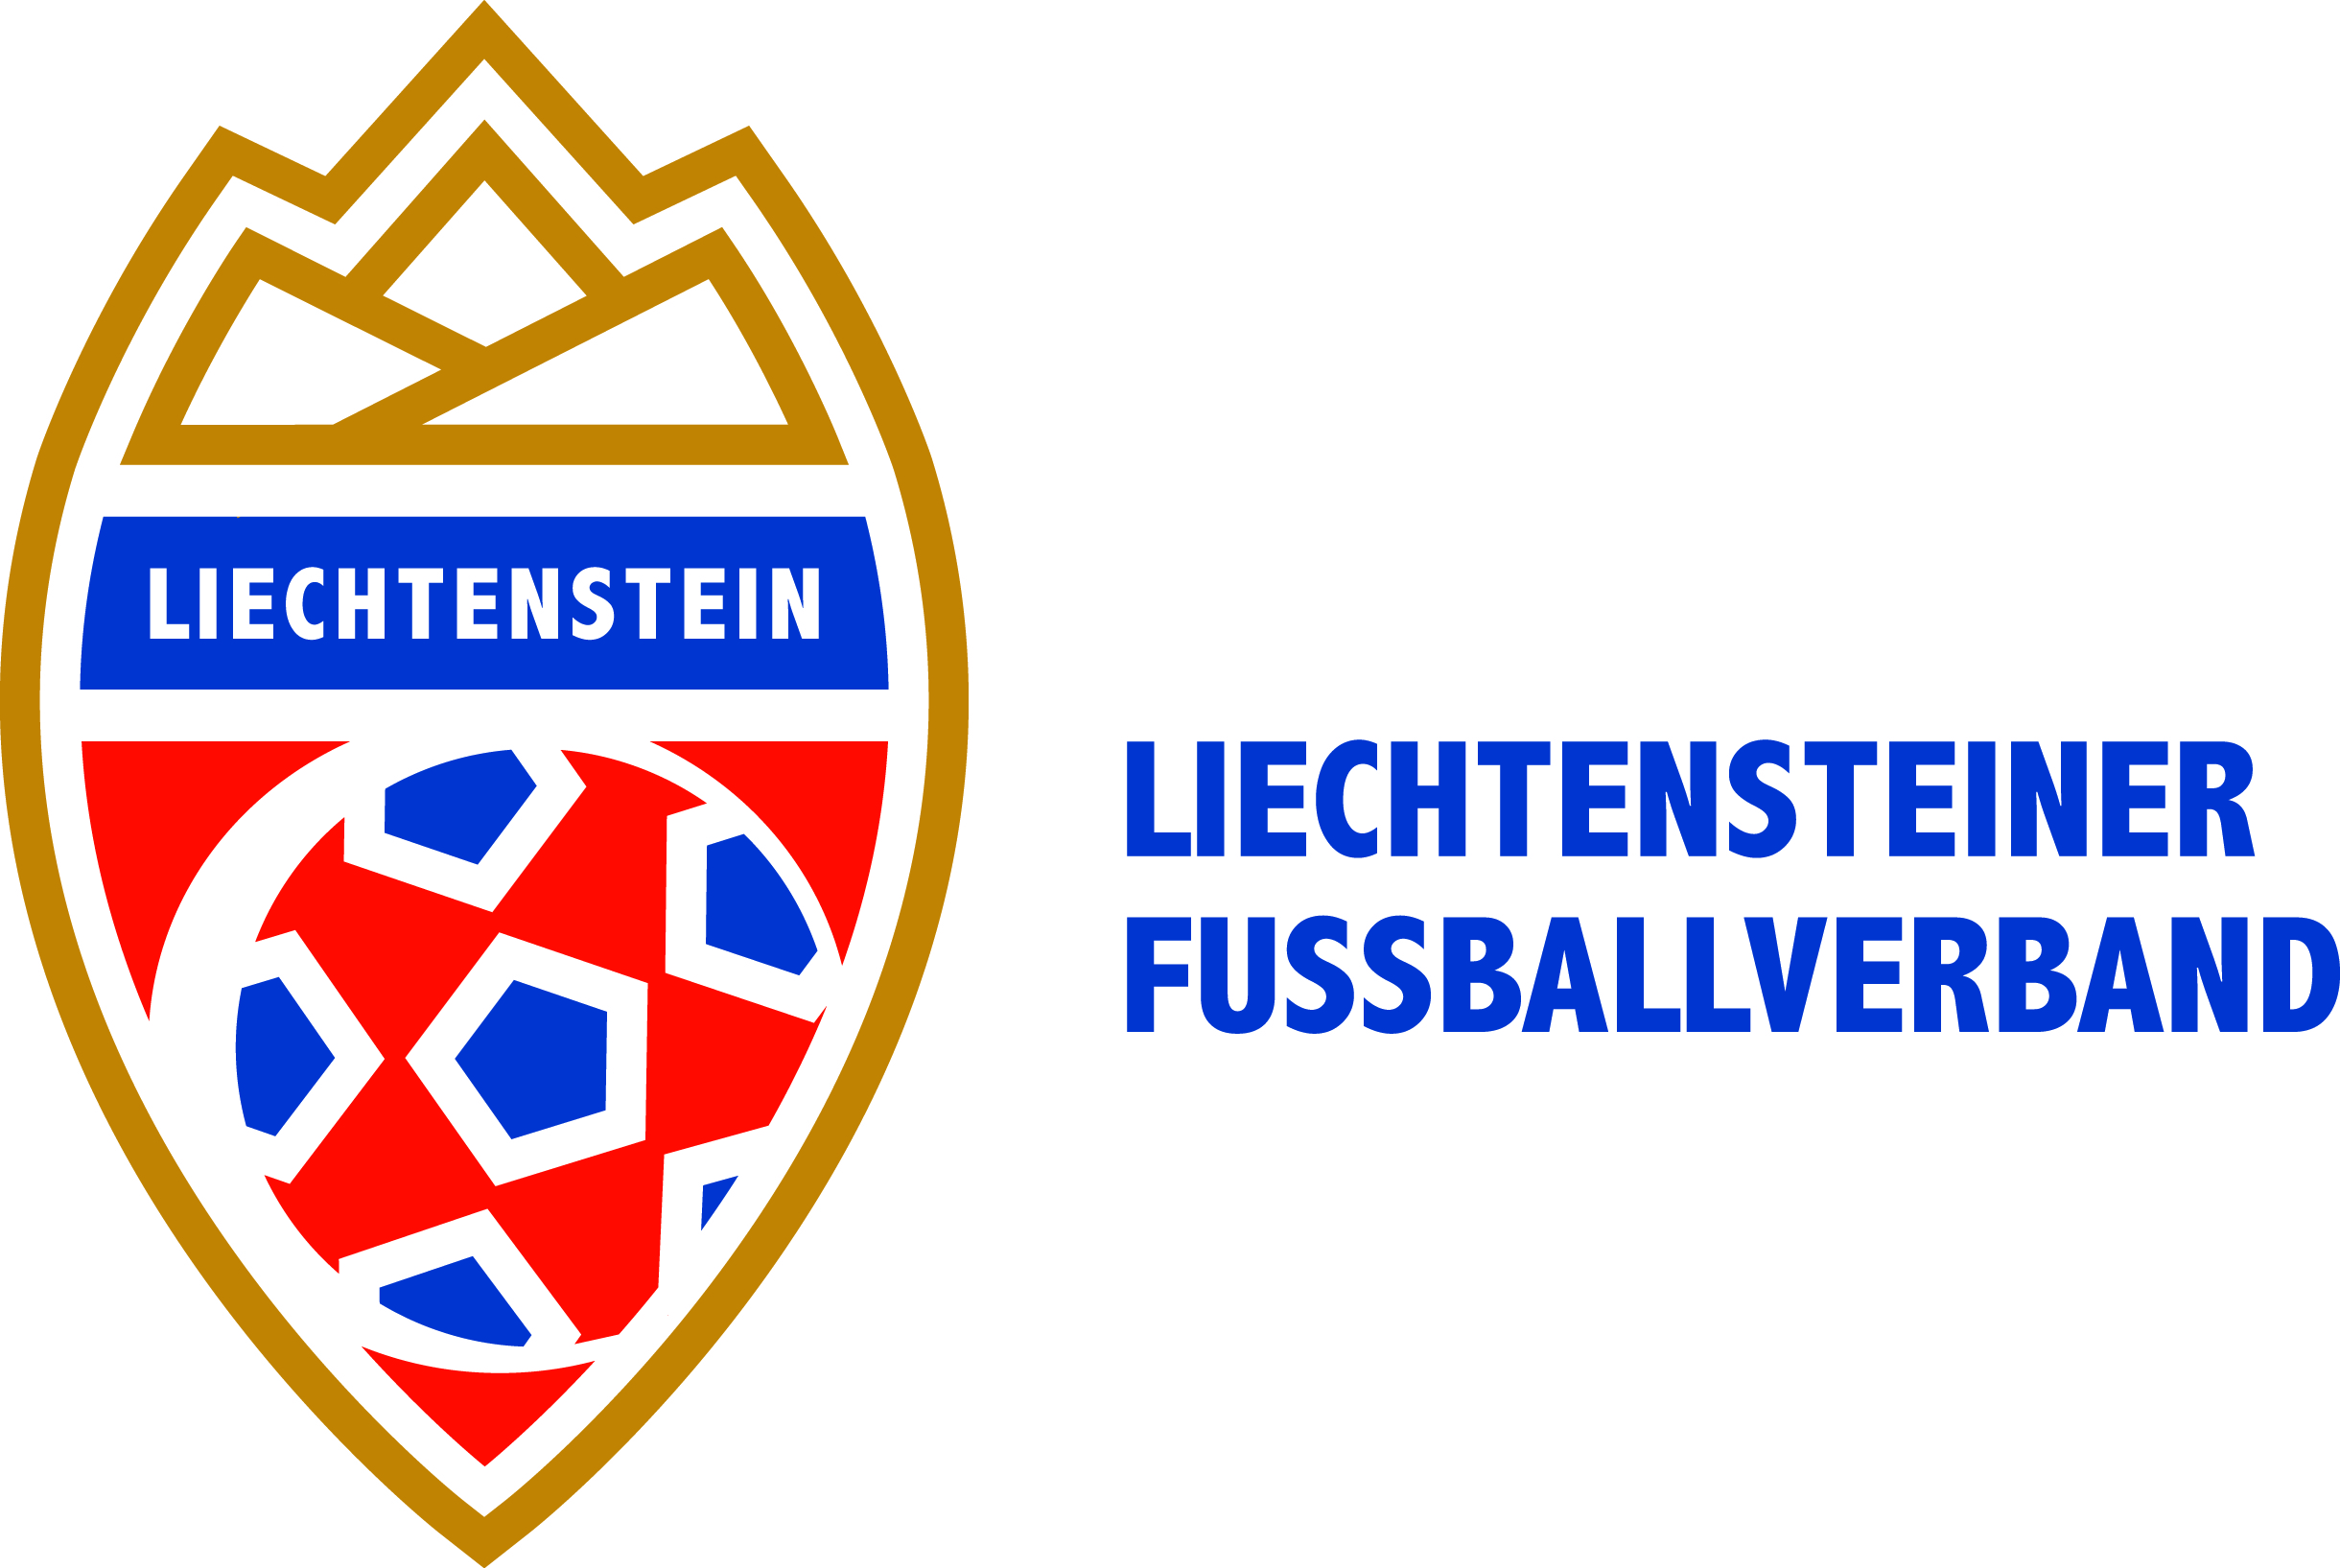 Liechtensteiner Fussballverband